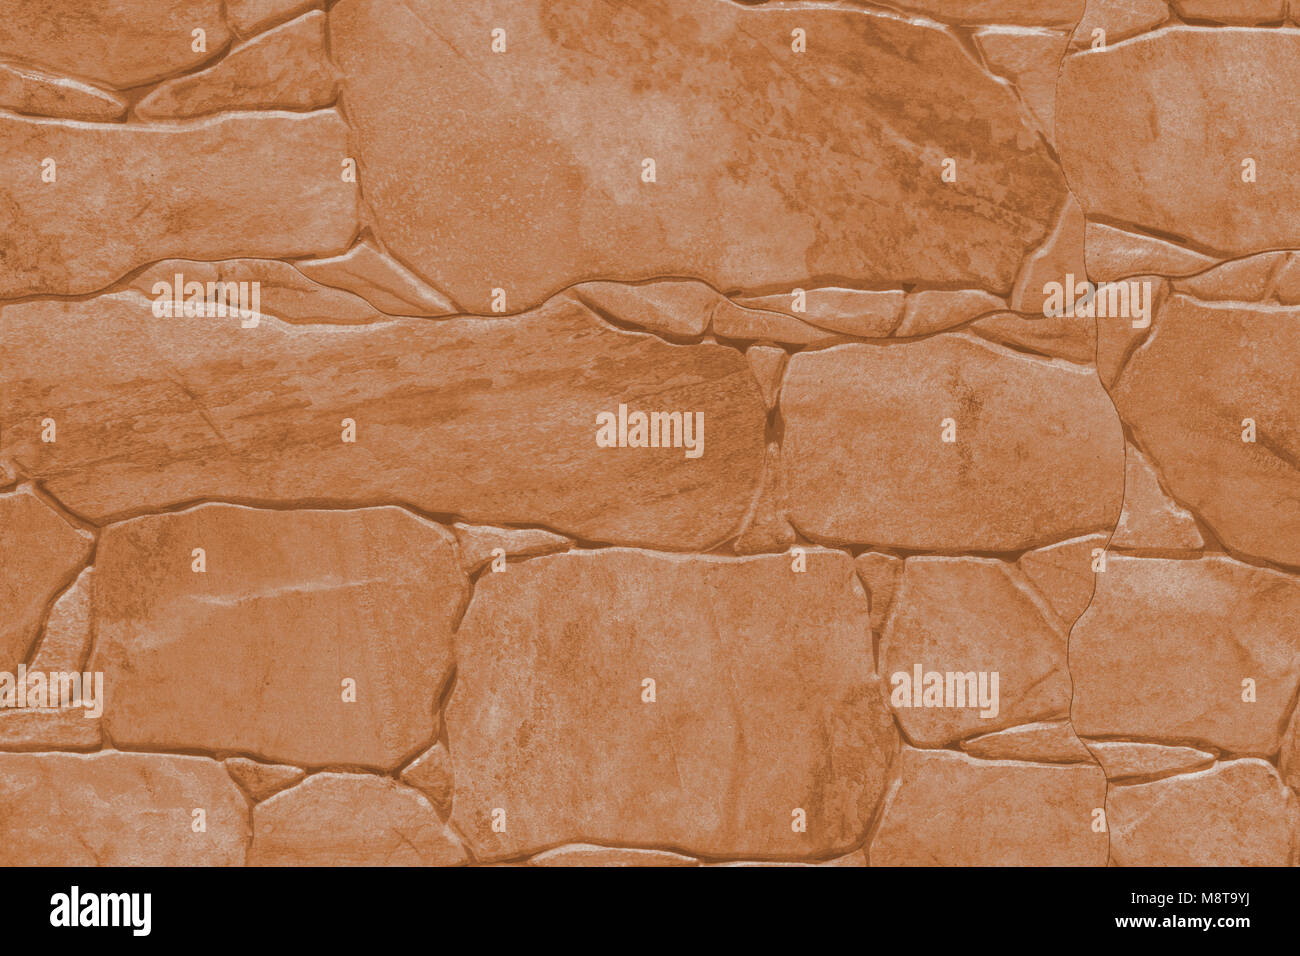 Fliese Imitation von Naturstein - Textur (Hintergrund). Toning in PANTONE-Farbe butterum. Stockfoto